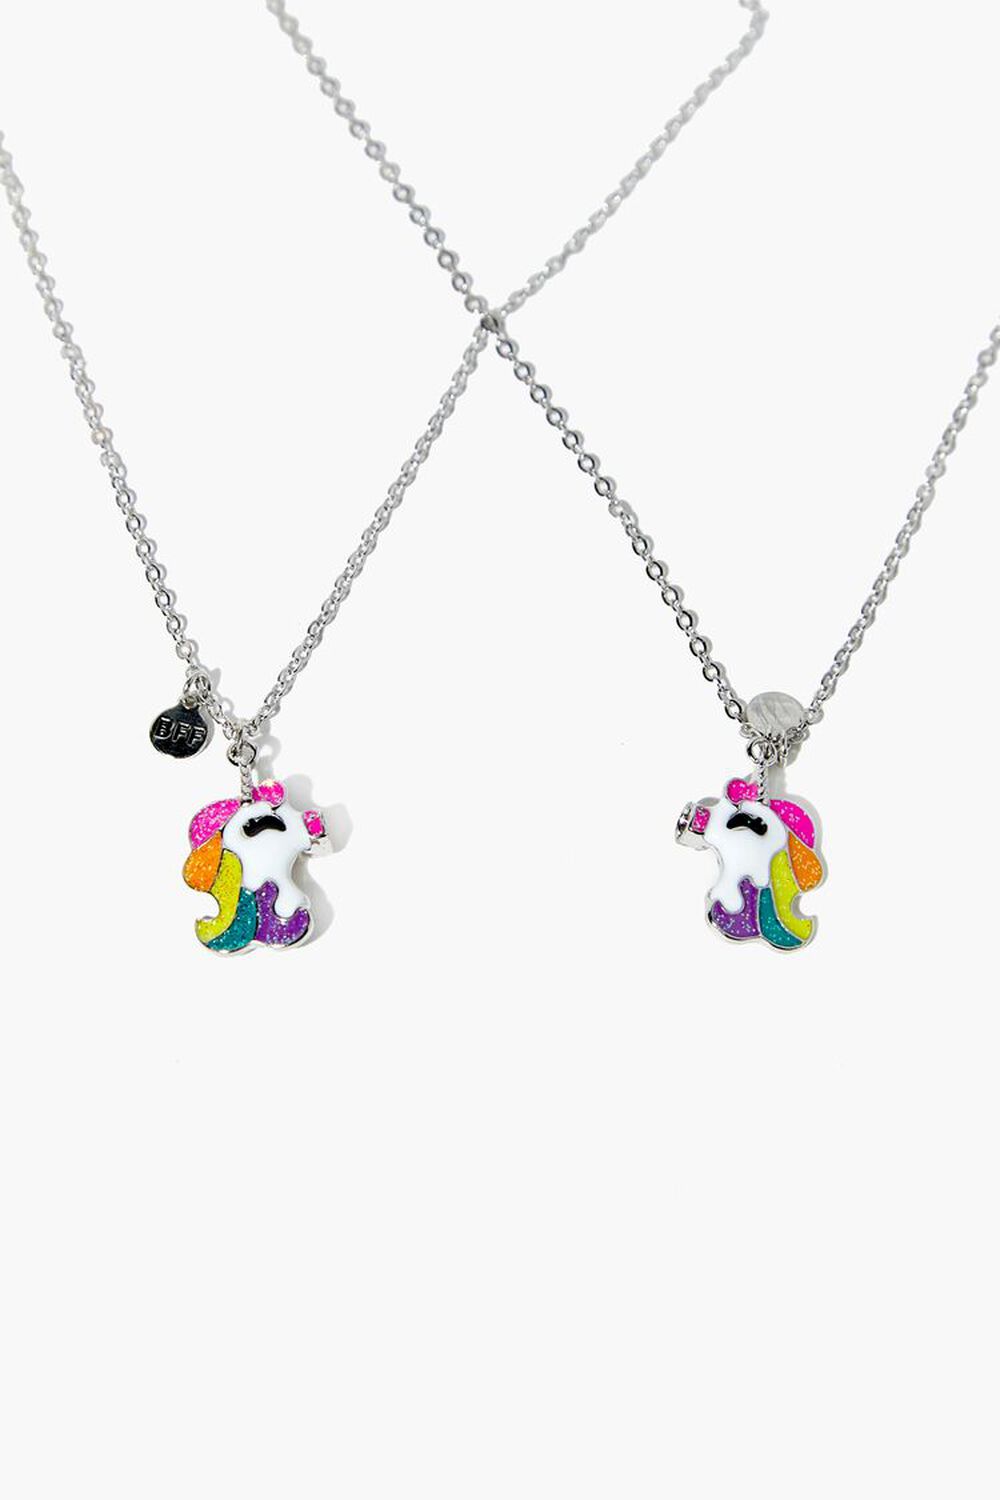 Girls Unicorn Friendship Necklace Set (Kids), image 1